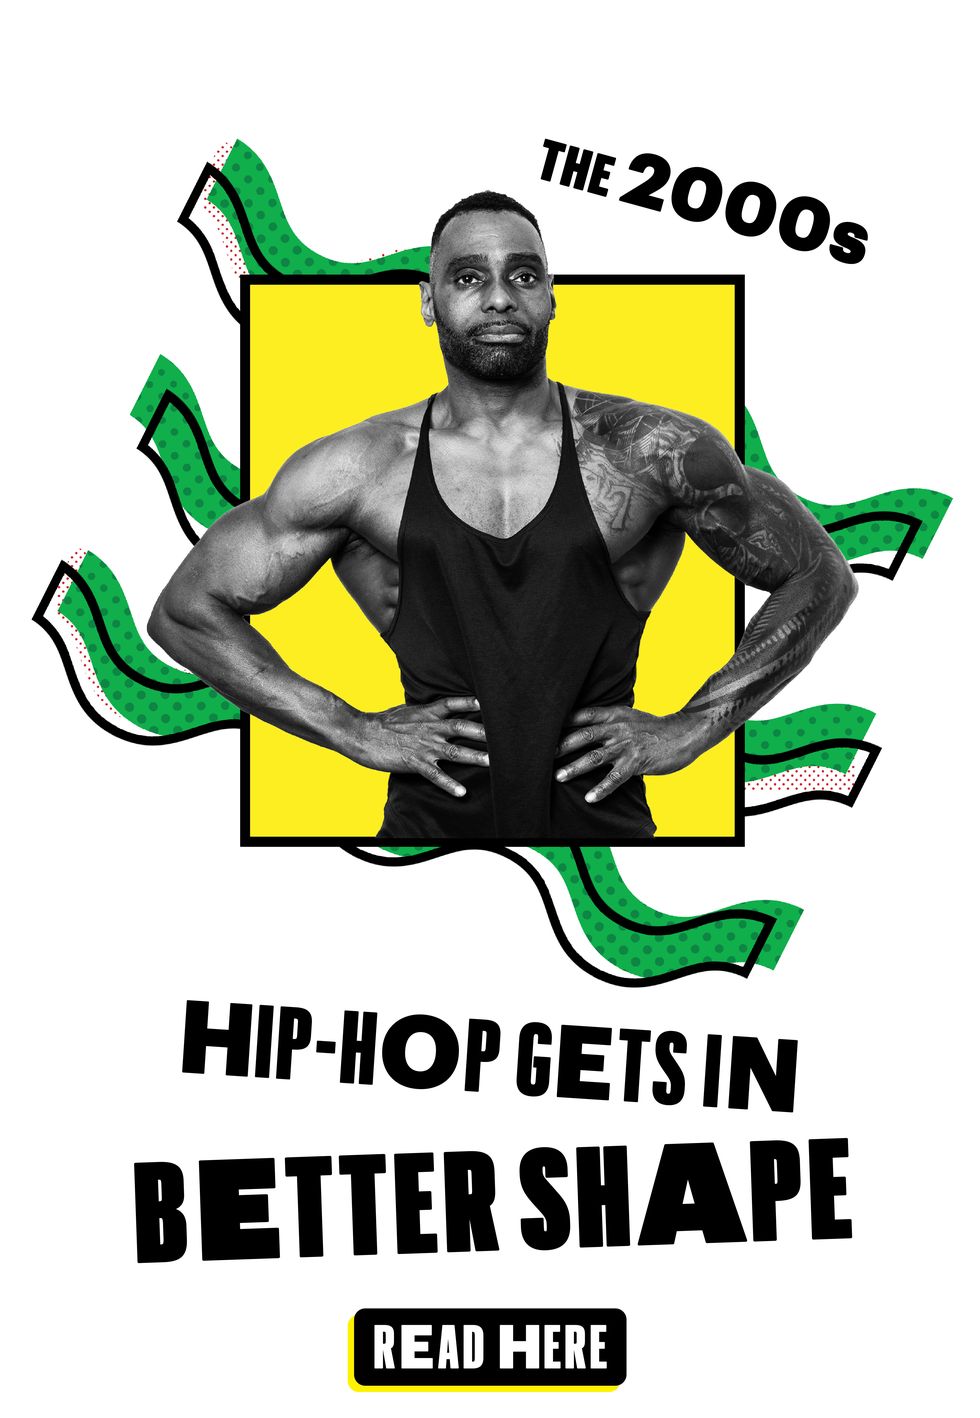 hip hop gets in shape